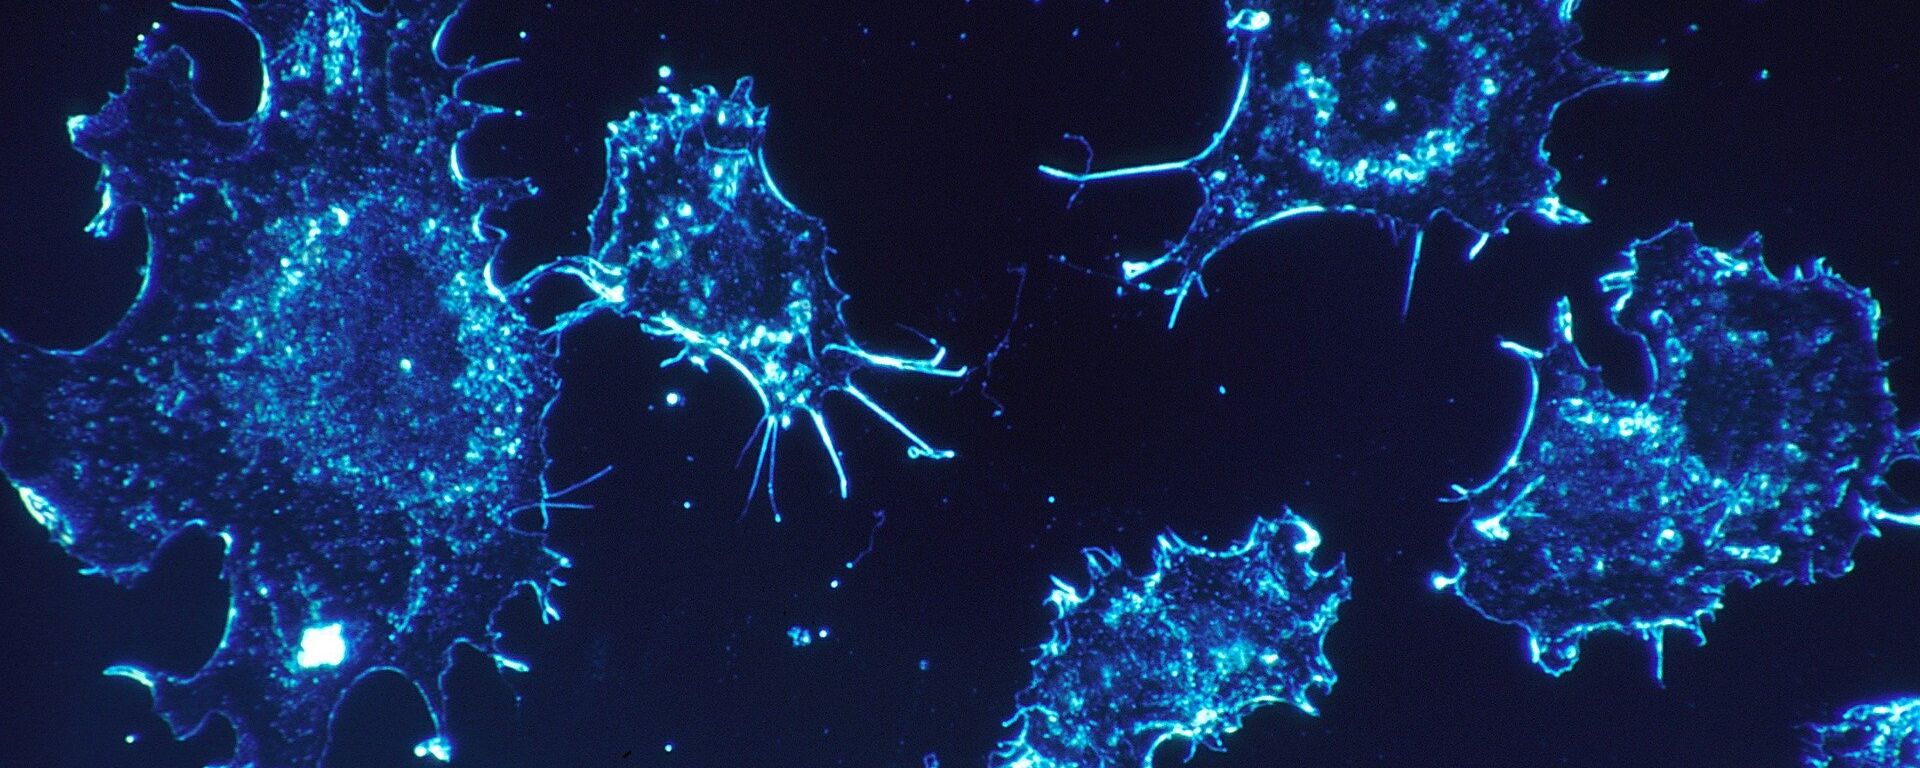 Cancer cells  - Sputnik International, 1920, 19.03.2021